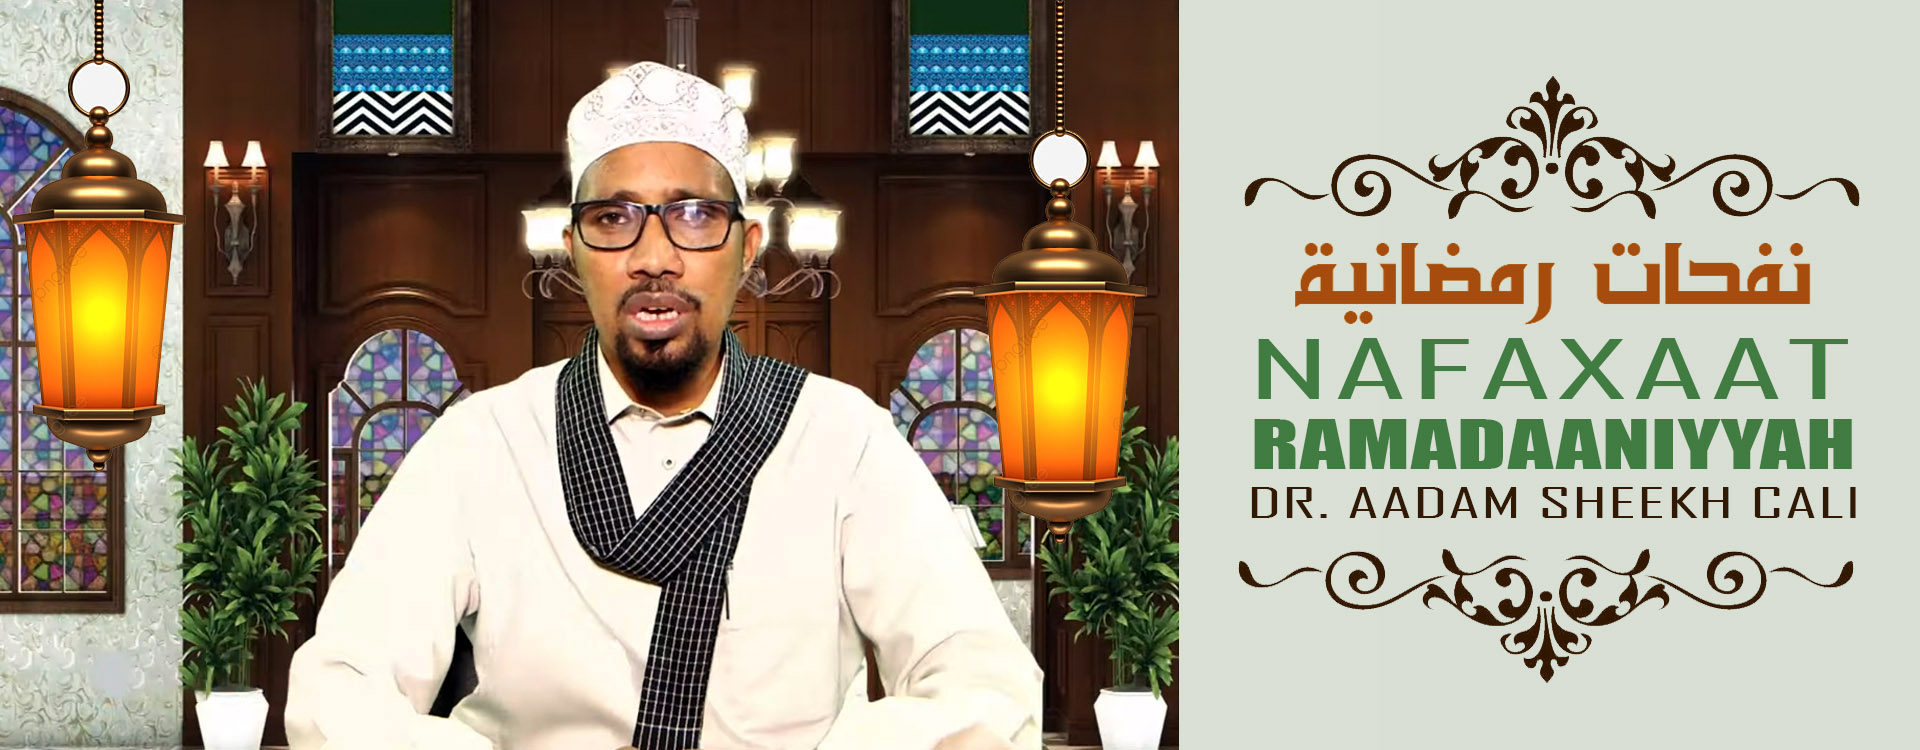 Nafaxaat Ramadaaniyah – Sheekh Dr. Aadam Sheekh Cali Saalax